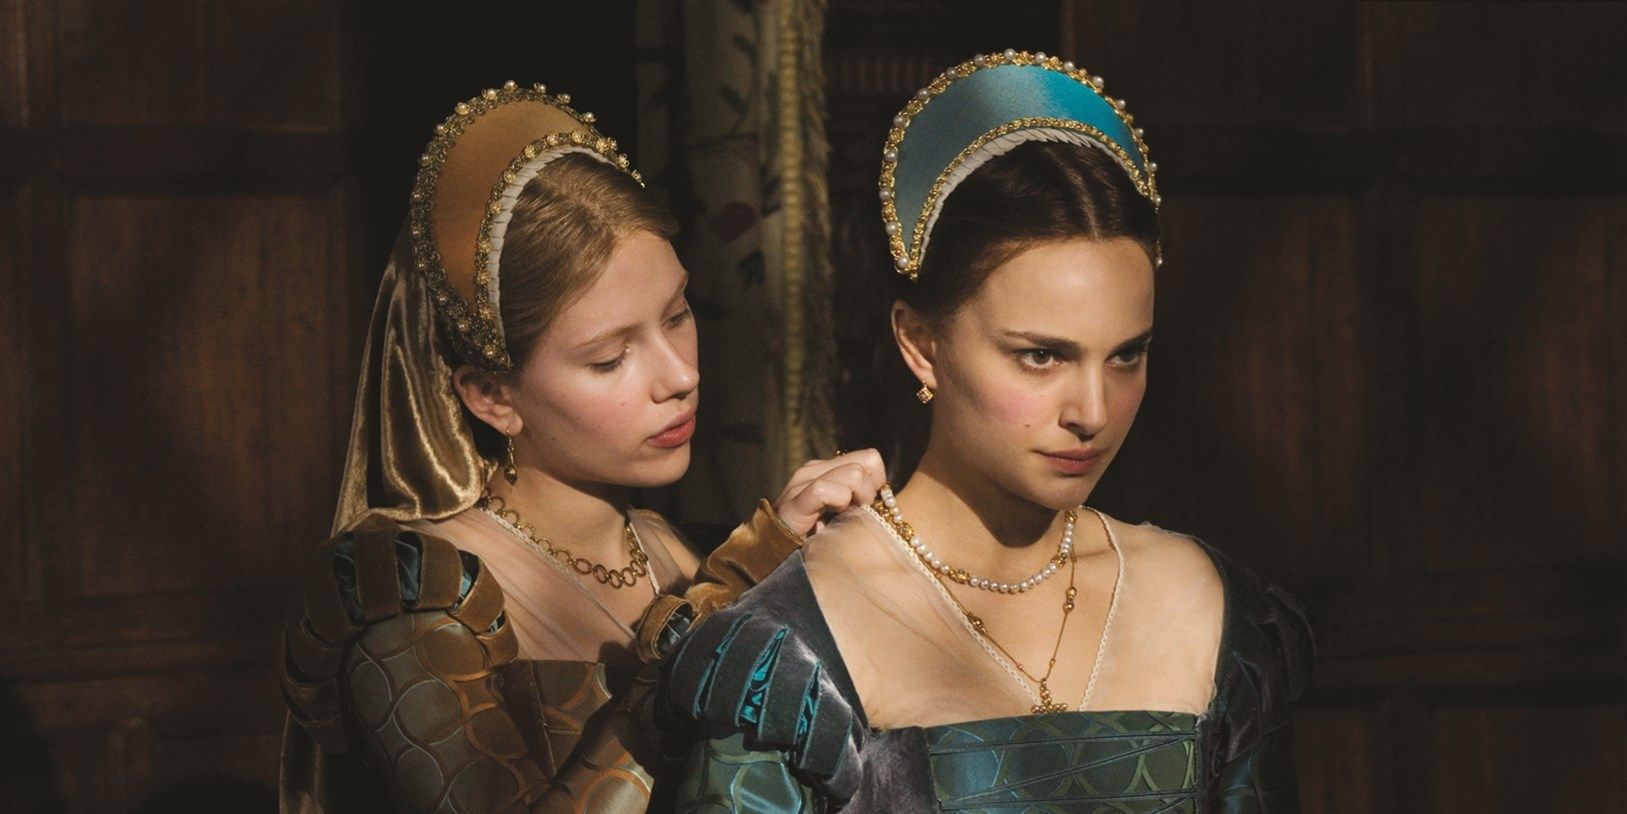 Natalie Portman as Anne and Scarlett Johansson as Mary in The Other Boleyn Girl